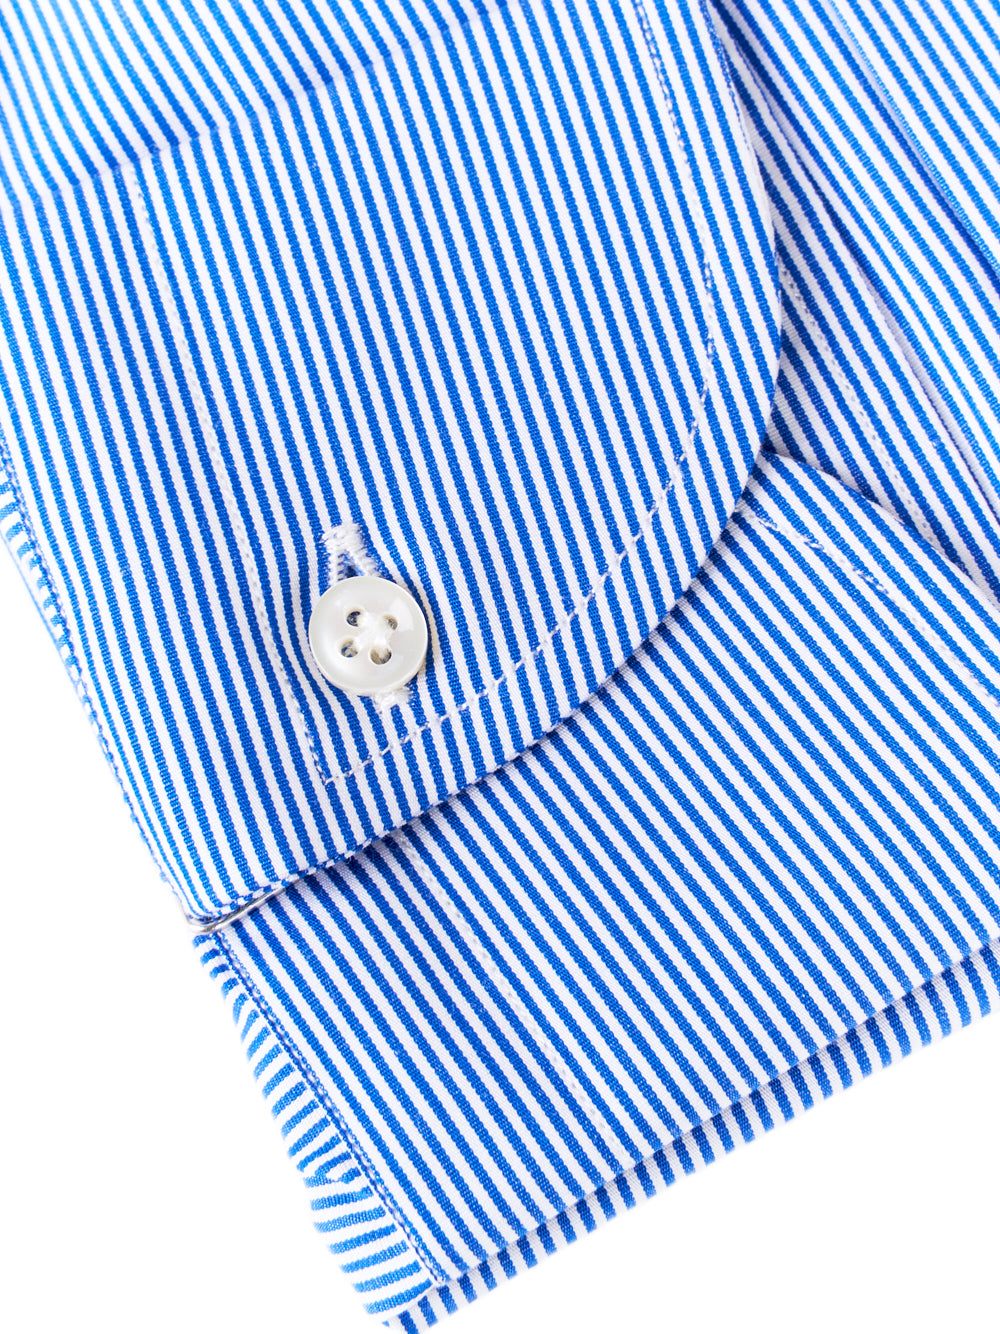 Camicia BORRIELLO Collo francese
Bianco/blu